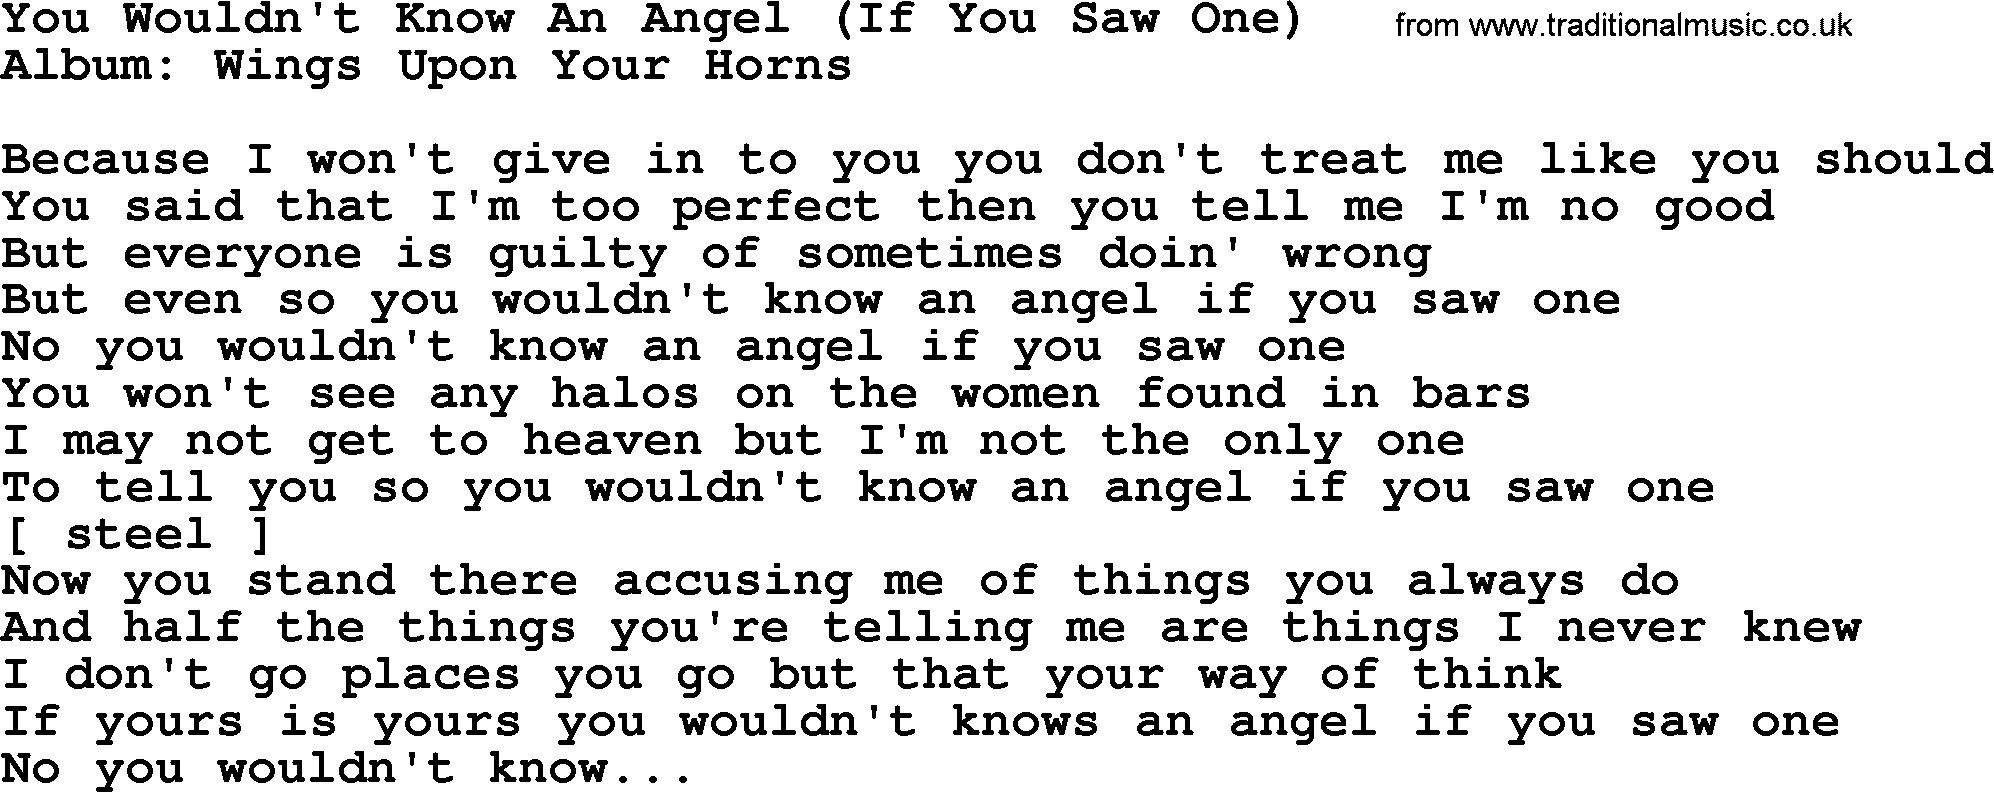 Loretta Lynn song: You Wouldn't Know An Angel (If You Saw One) lyrics